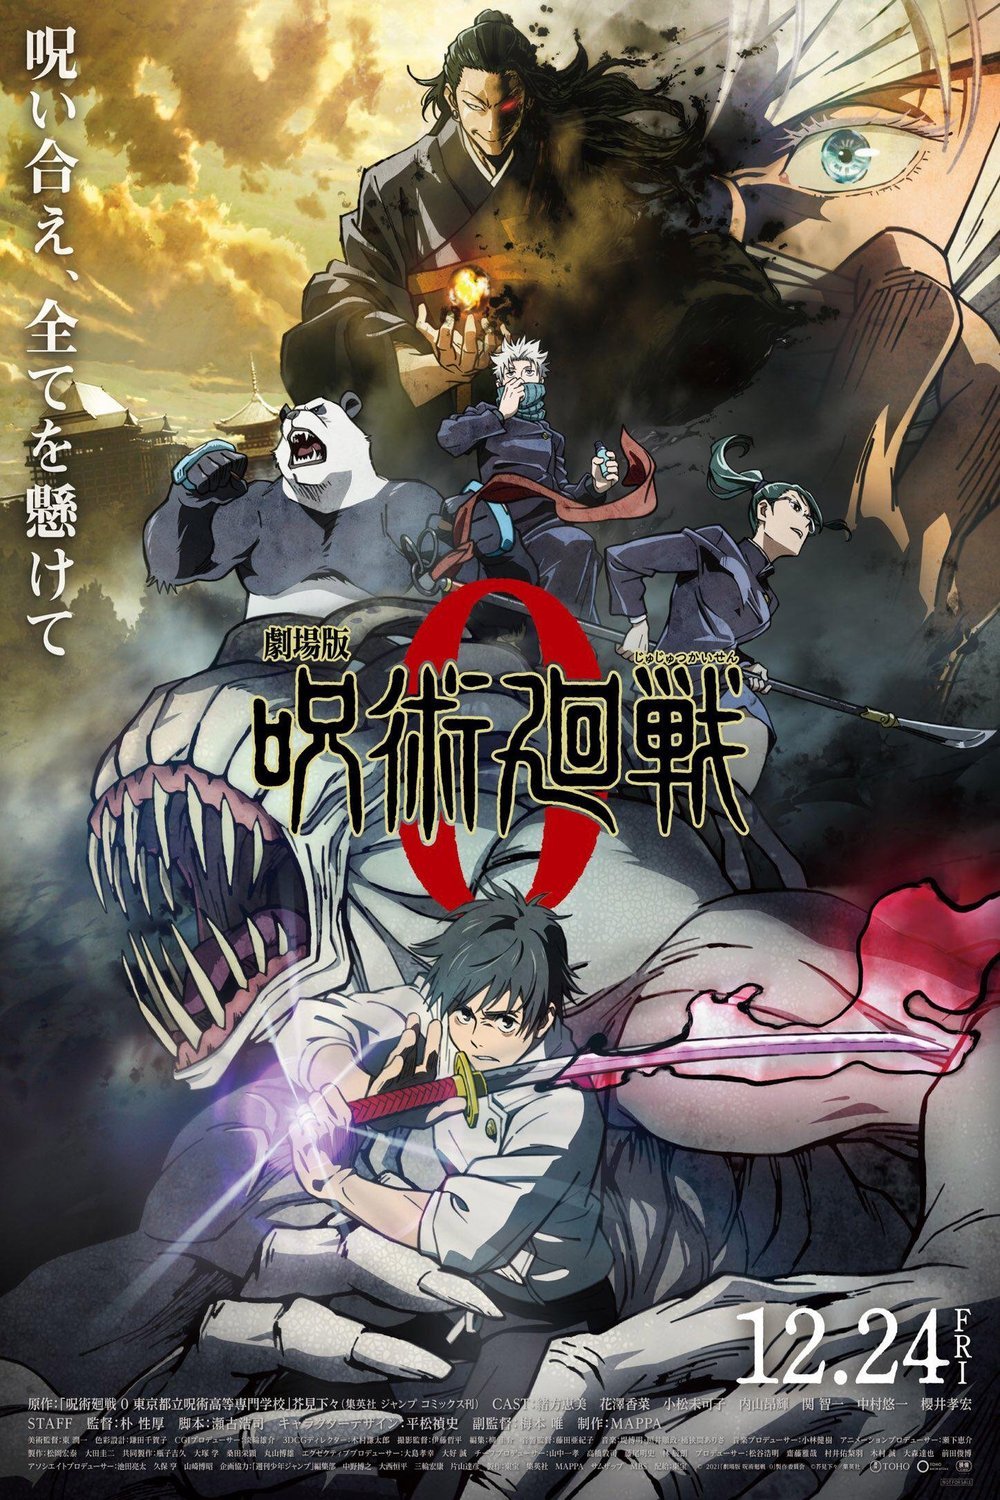 Japanese poster of the movie Jujutsu Kaisen 0: The Movie